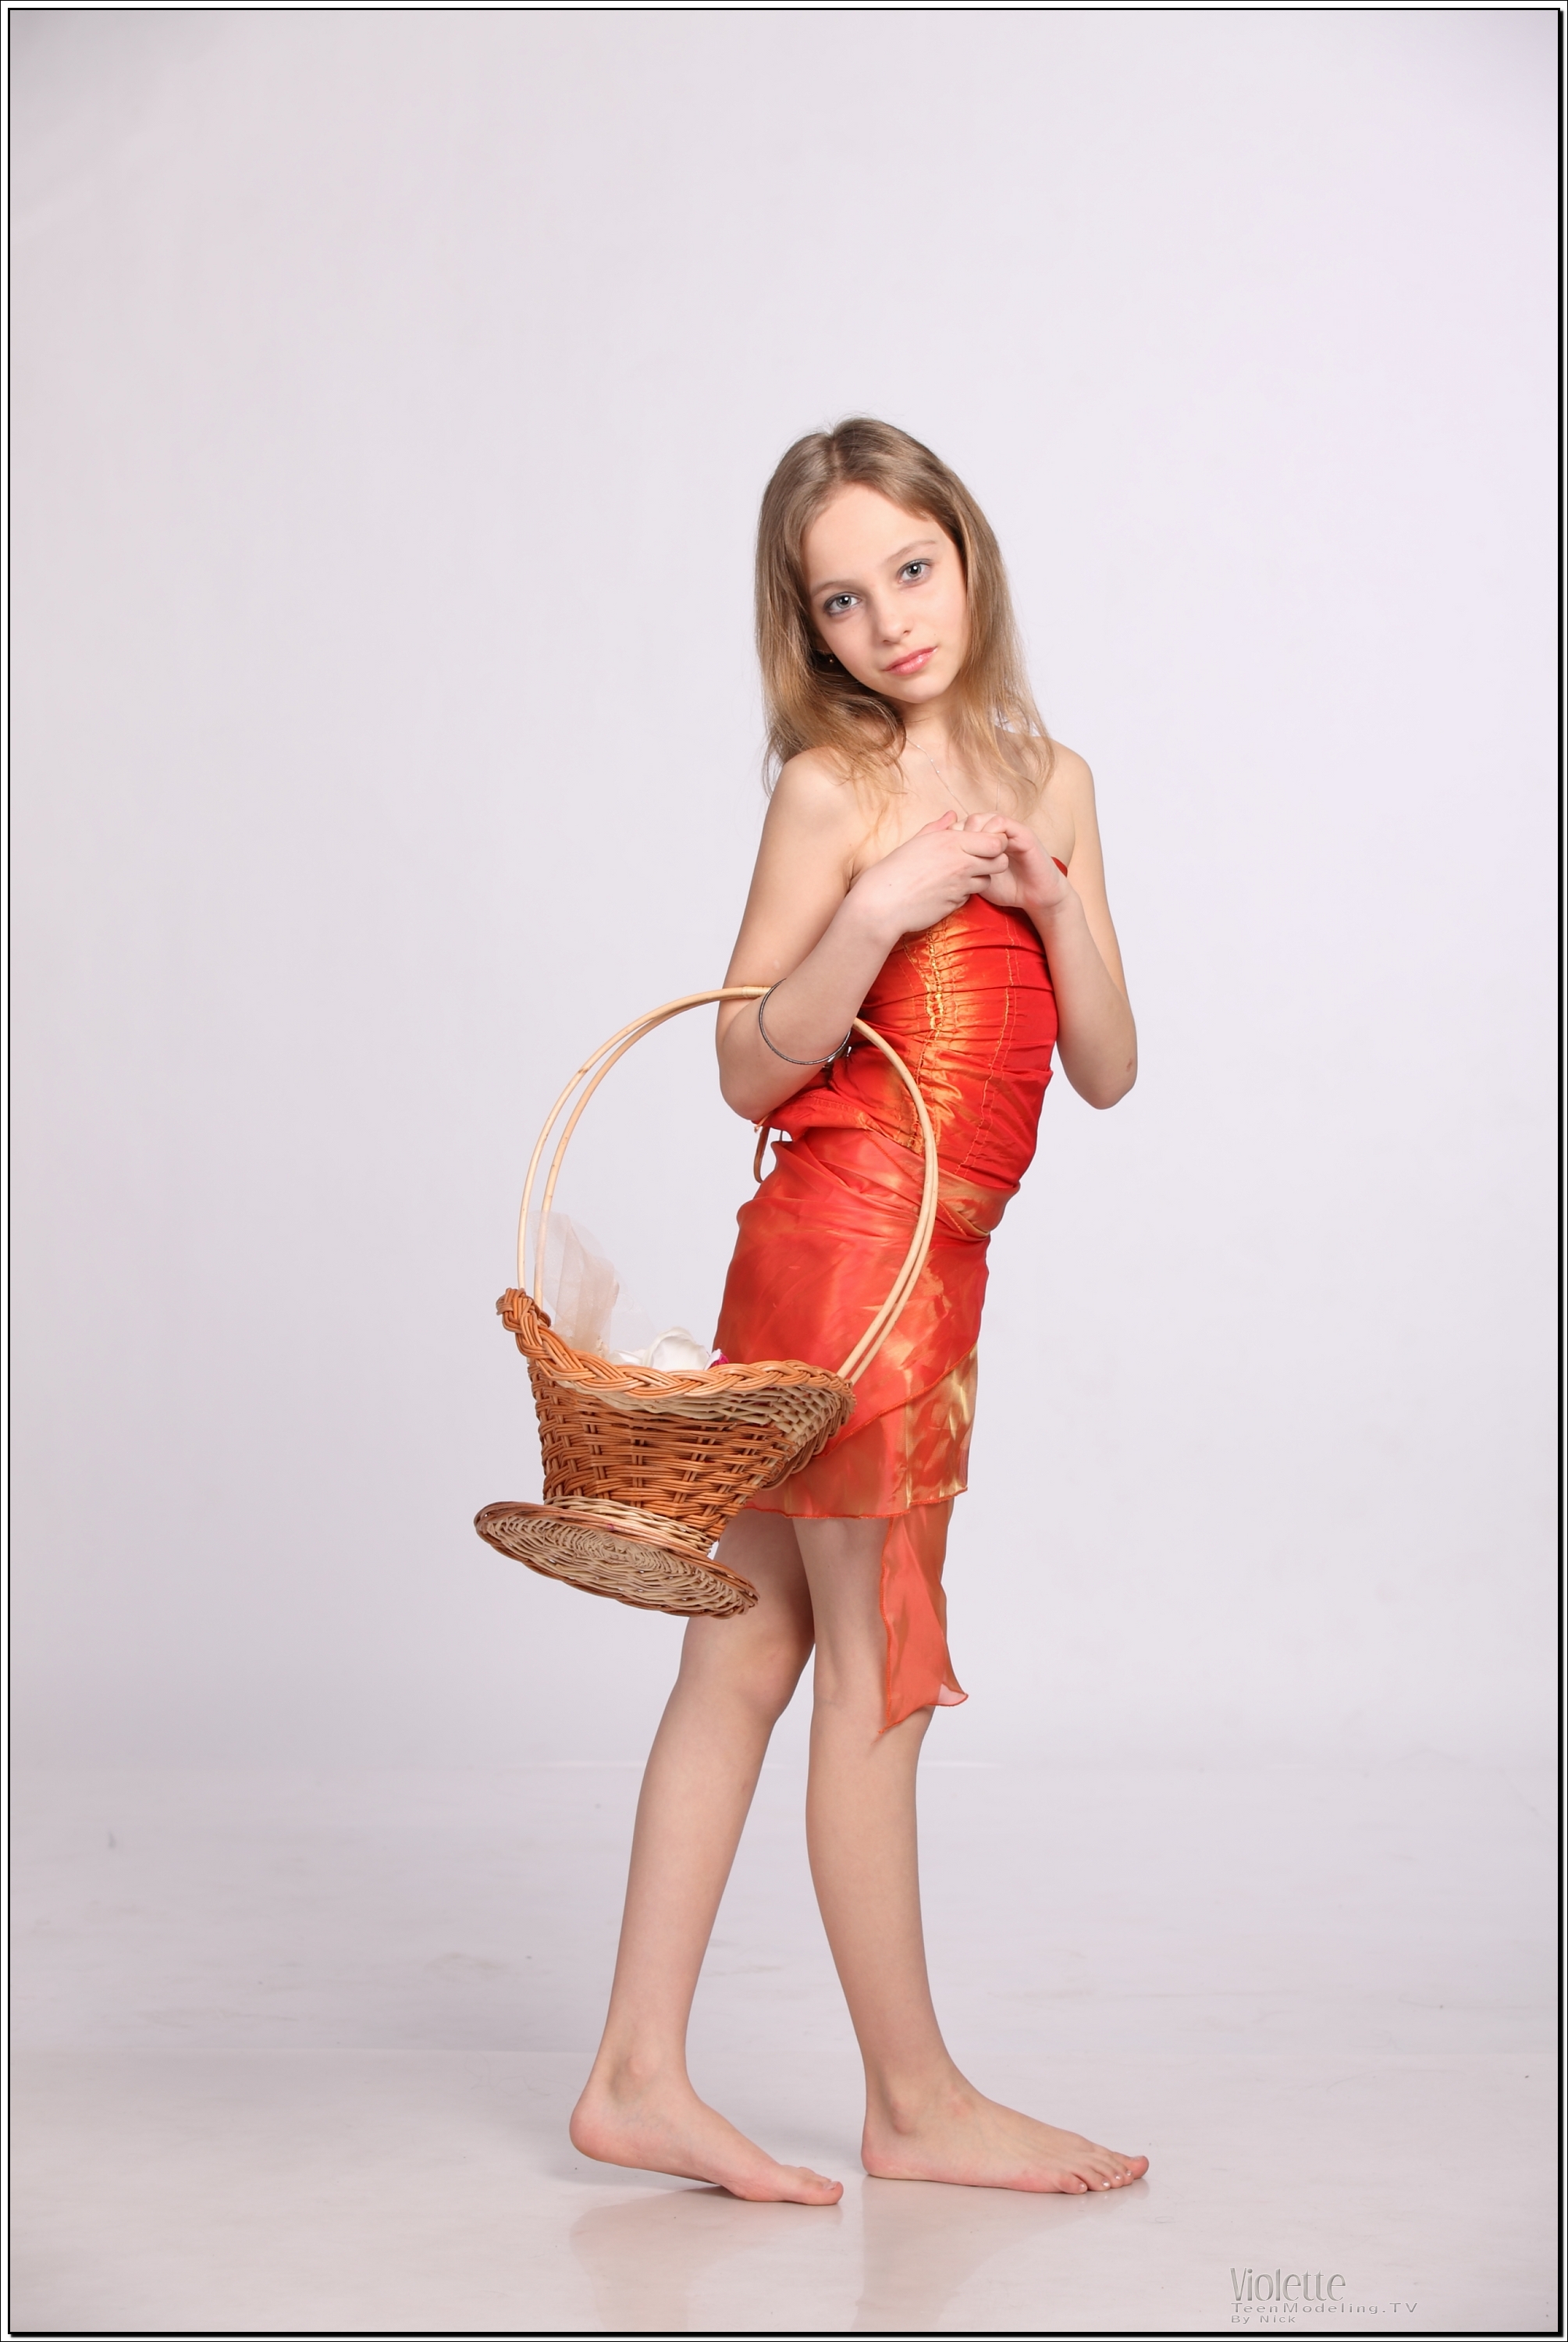 violette_model_orangesheer_teenmodeling_tv_013.jpg